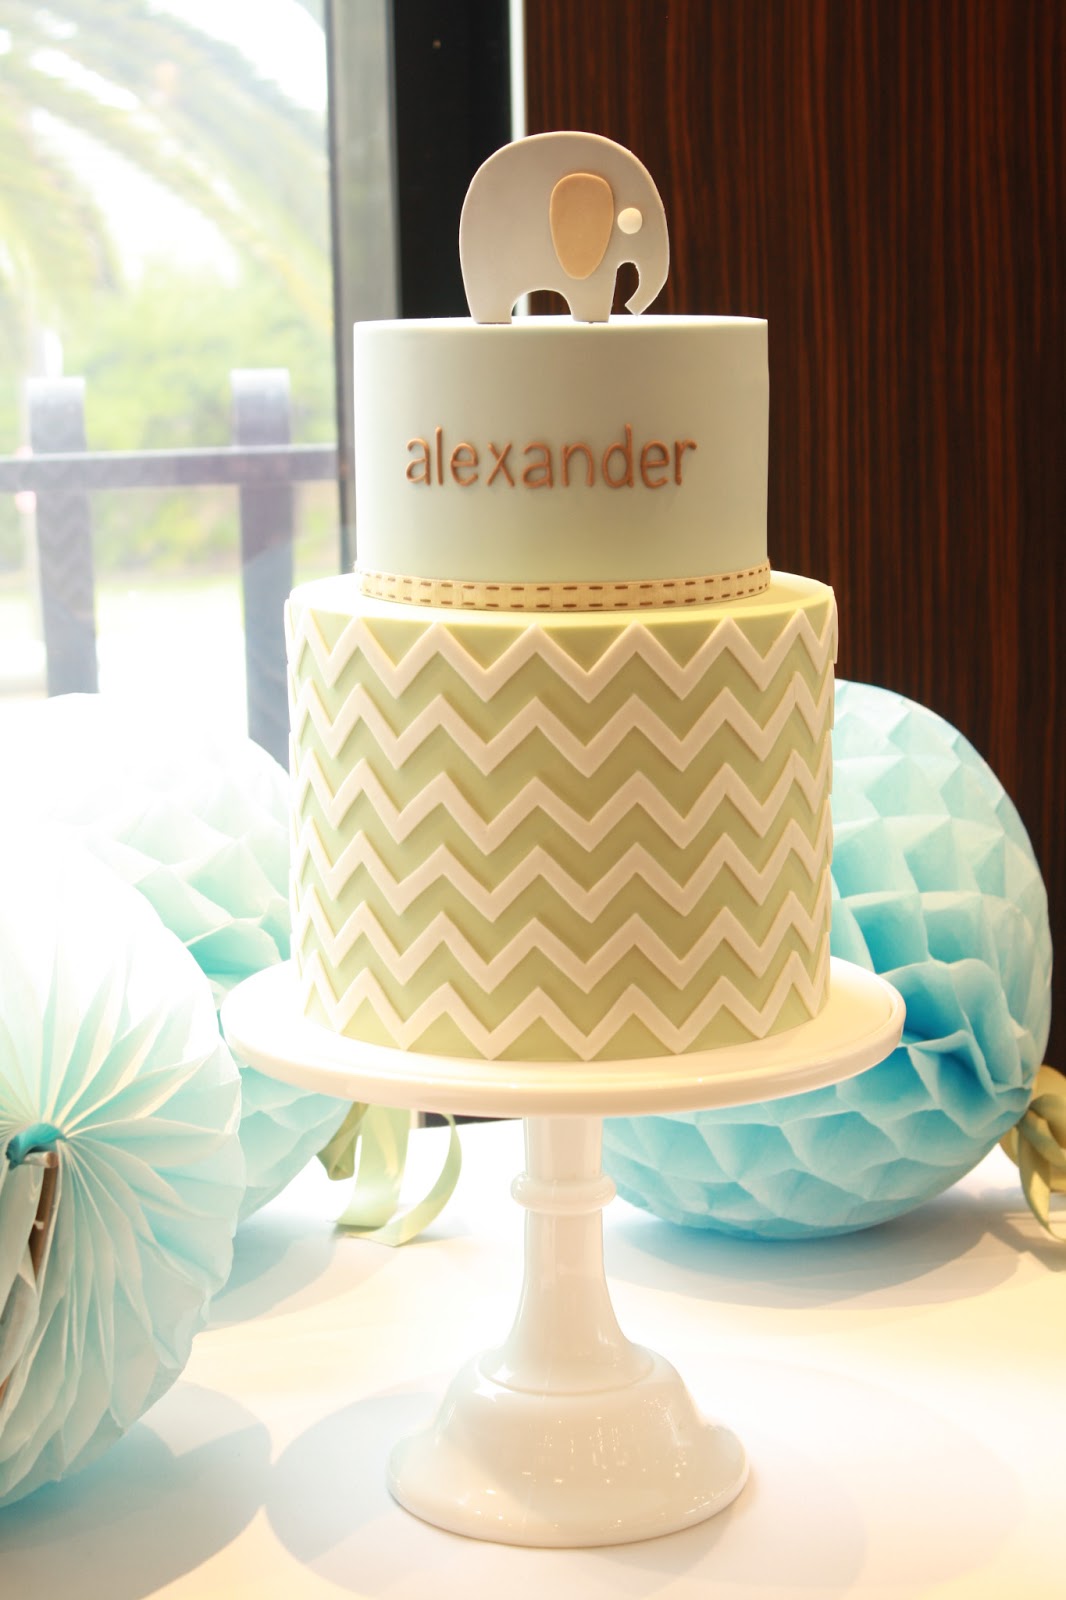 alexander s christening cake a custom designed cake made to match his ...